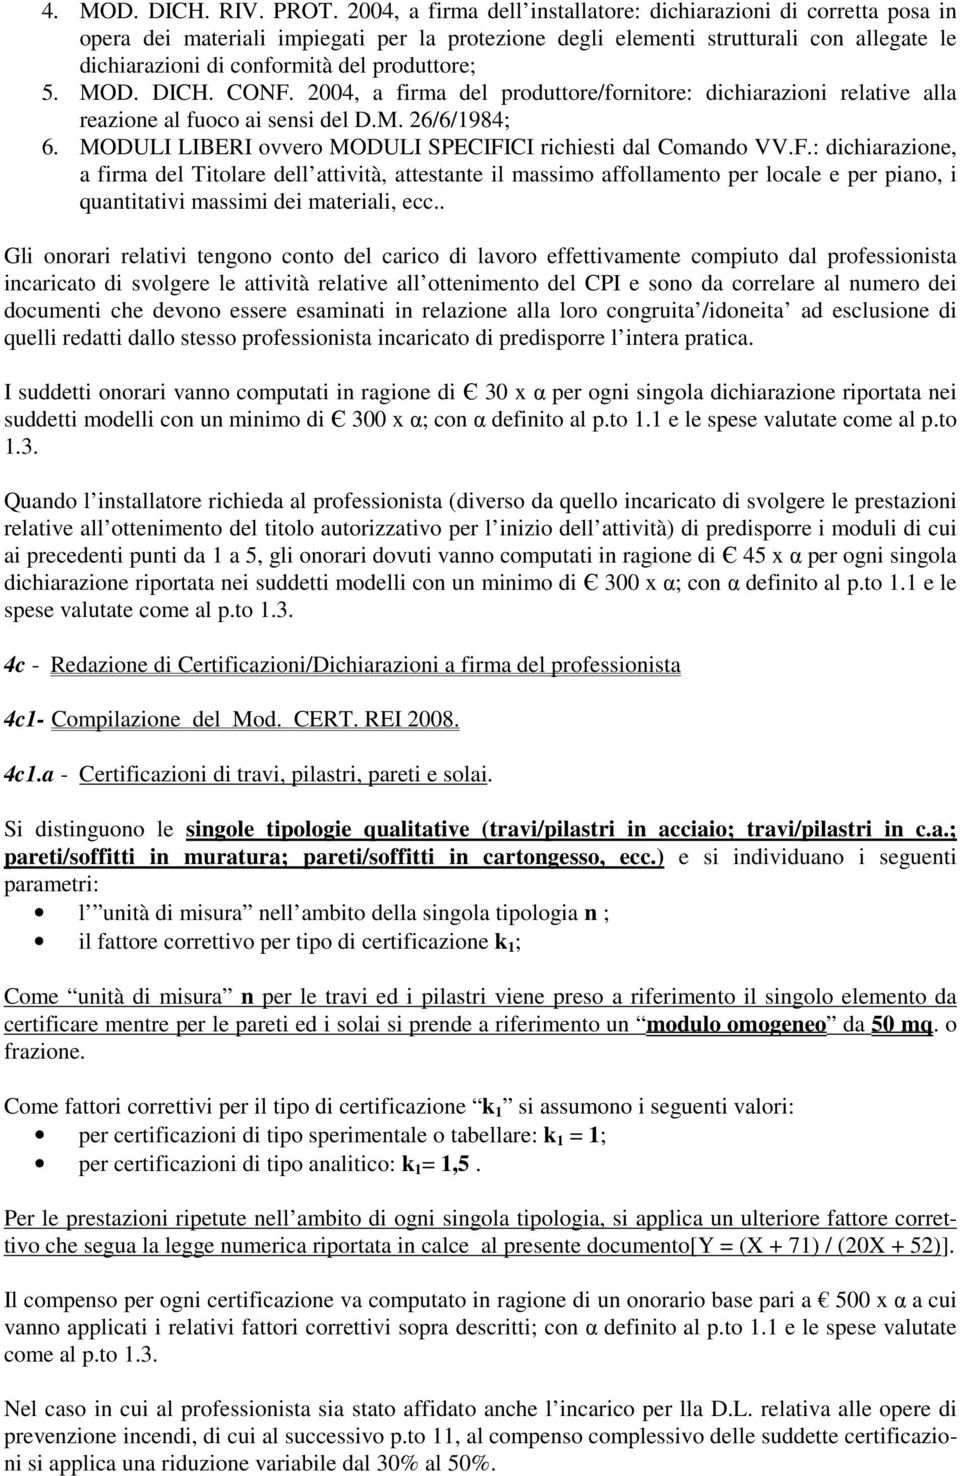 produttore; 5. MOD. DICH. CONF. 2004, a firma del produttore/fornitore: dichiarazioni relative alla reazione al fuoco ai sensi del D.M. 26/6/1984; 6.